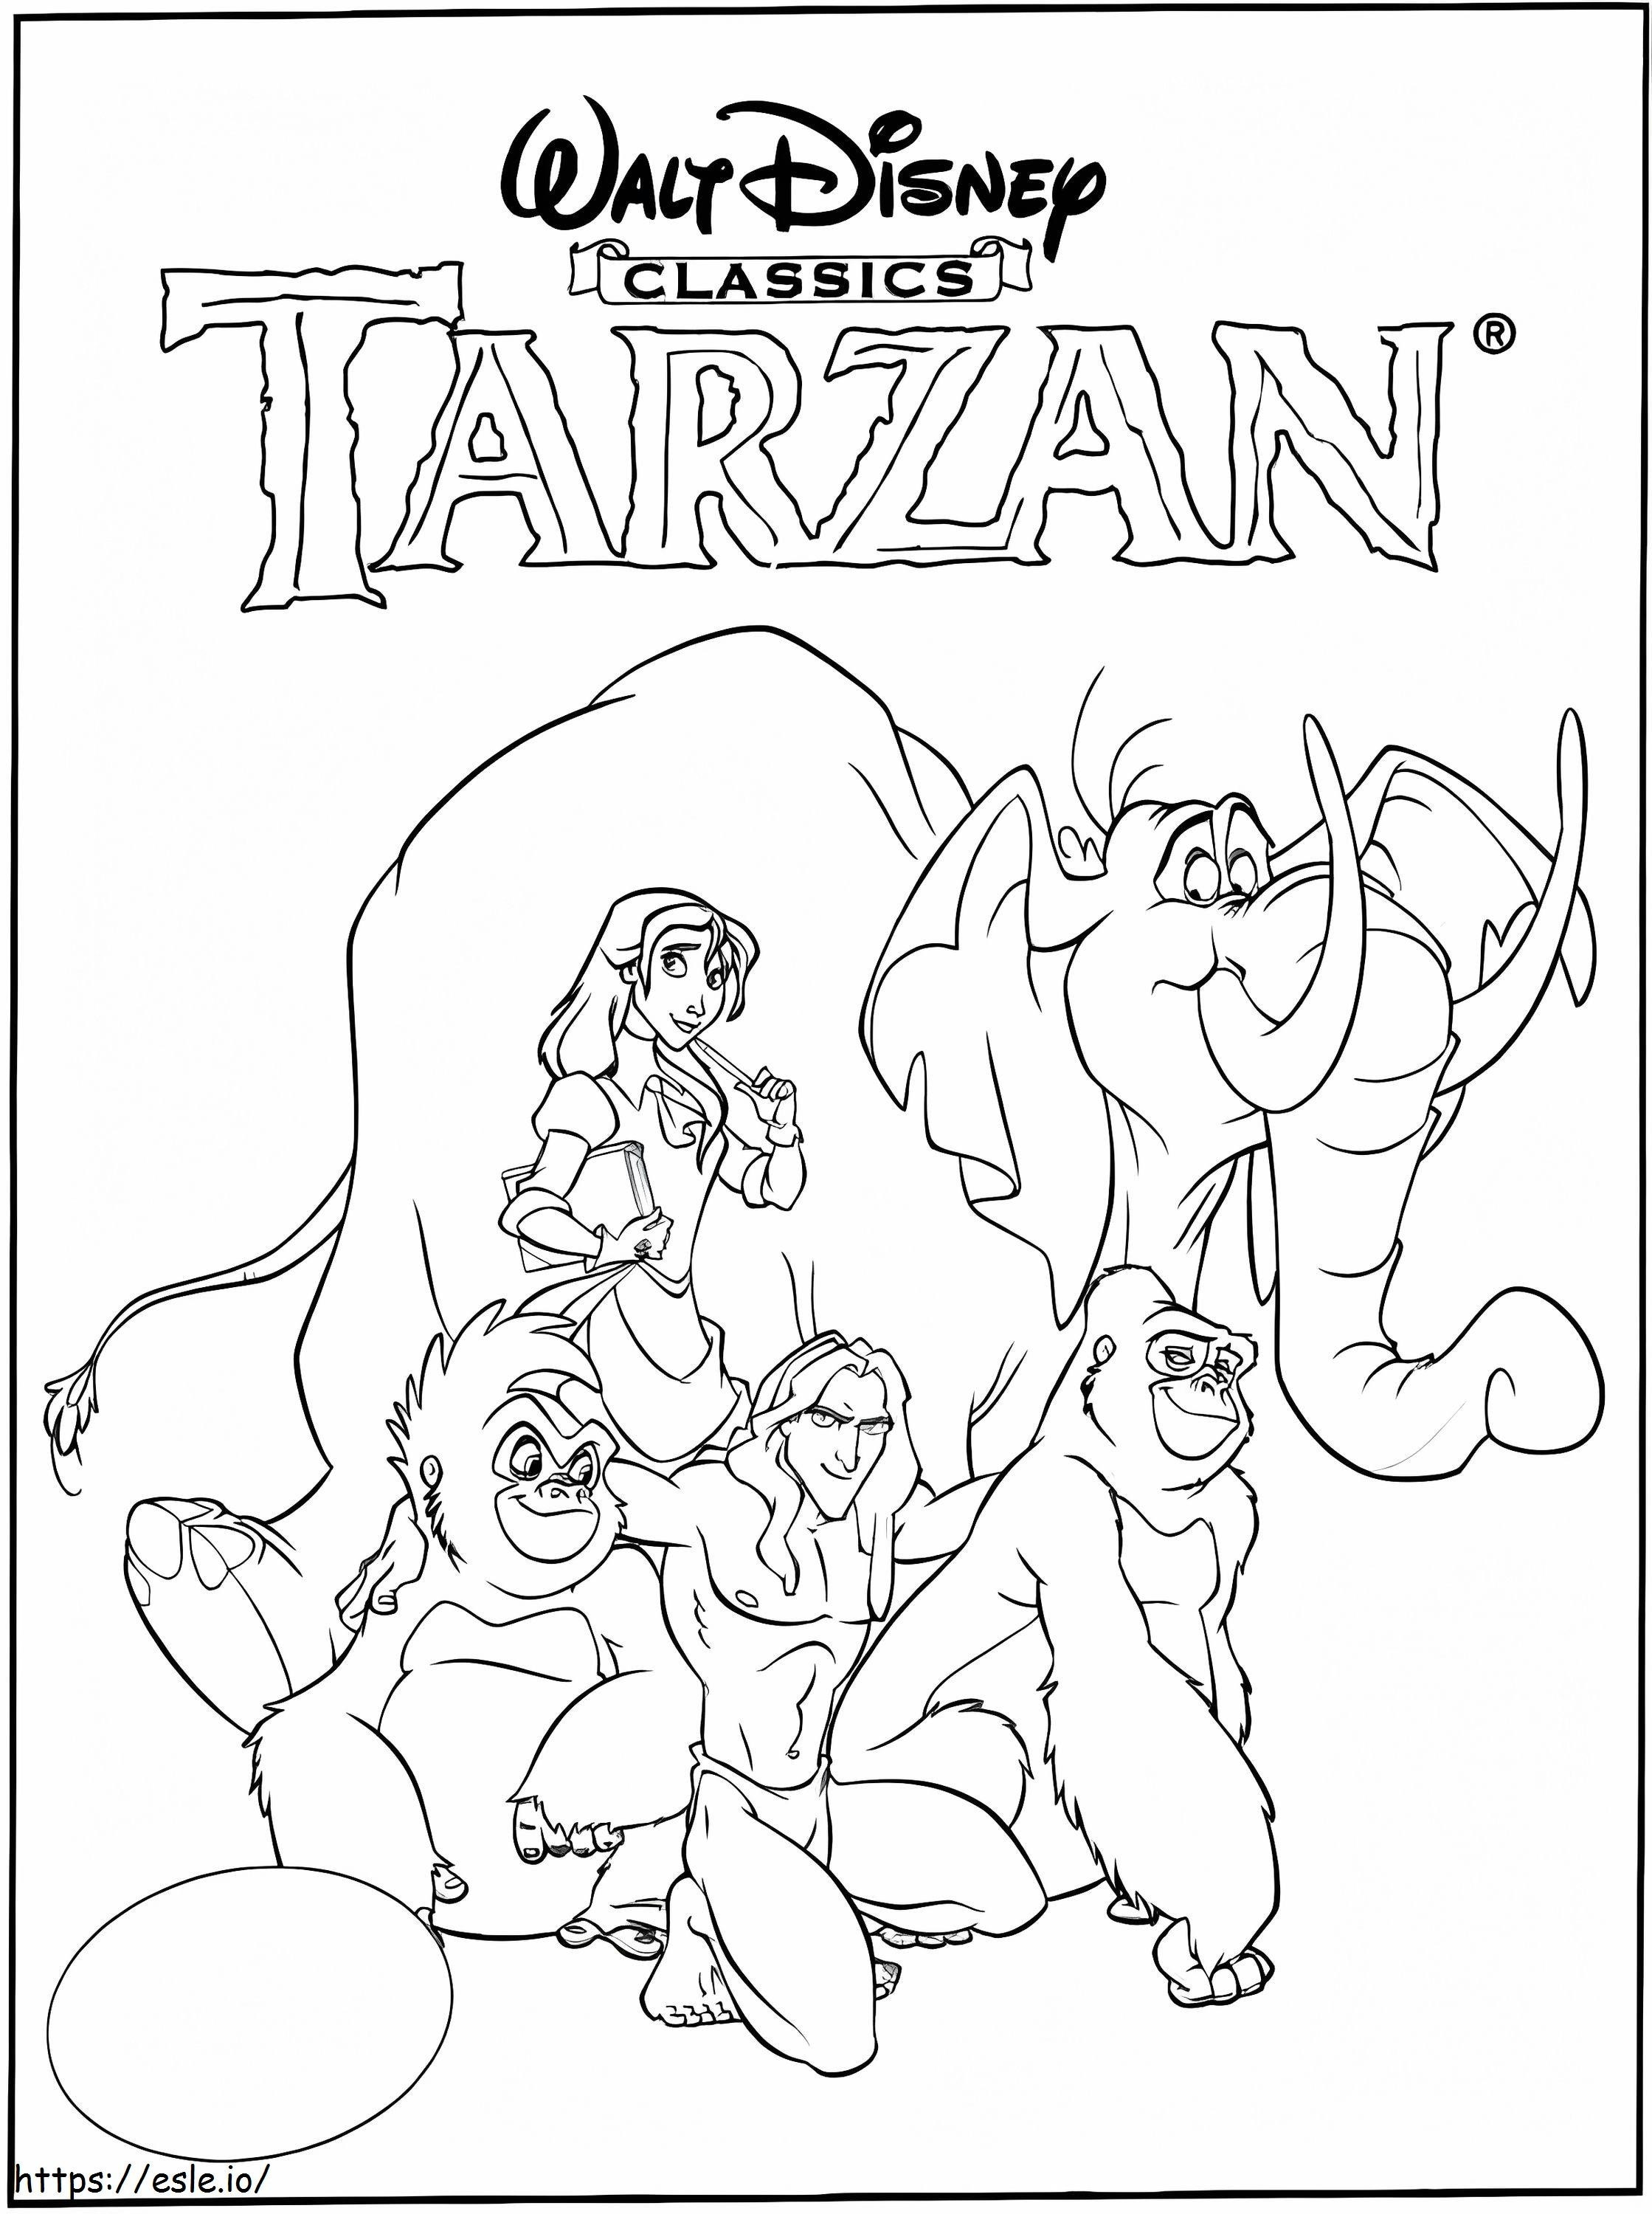 Film Tarzana kolorowanka